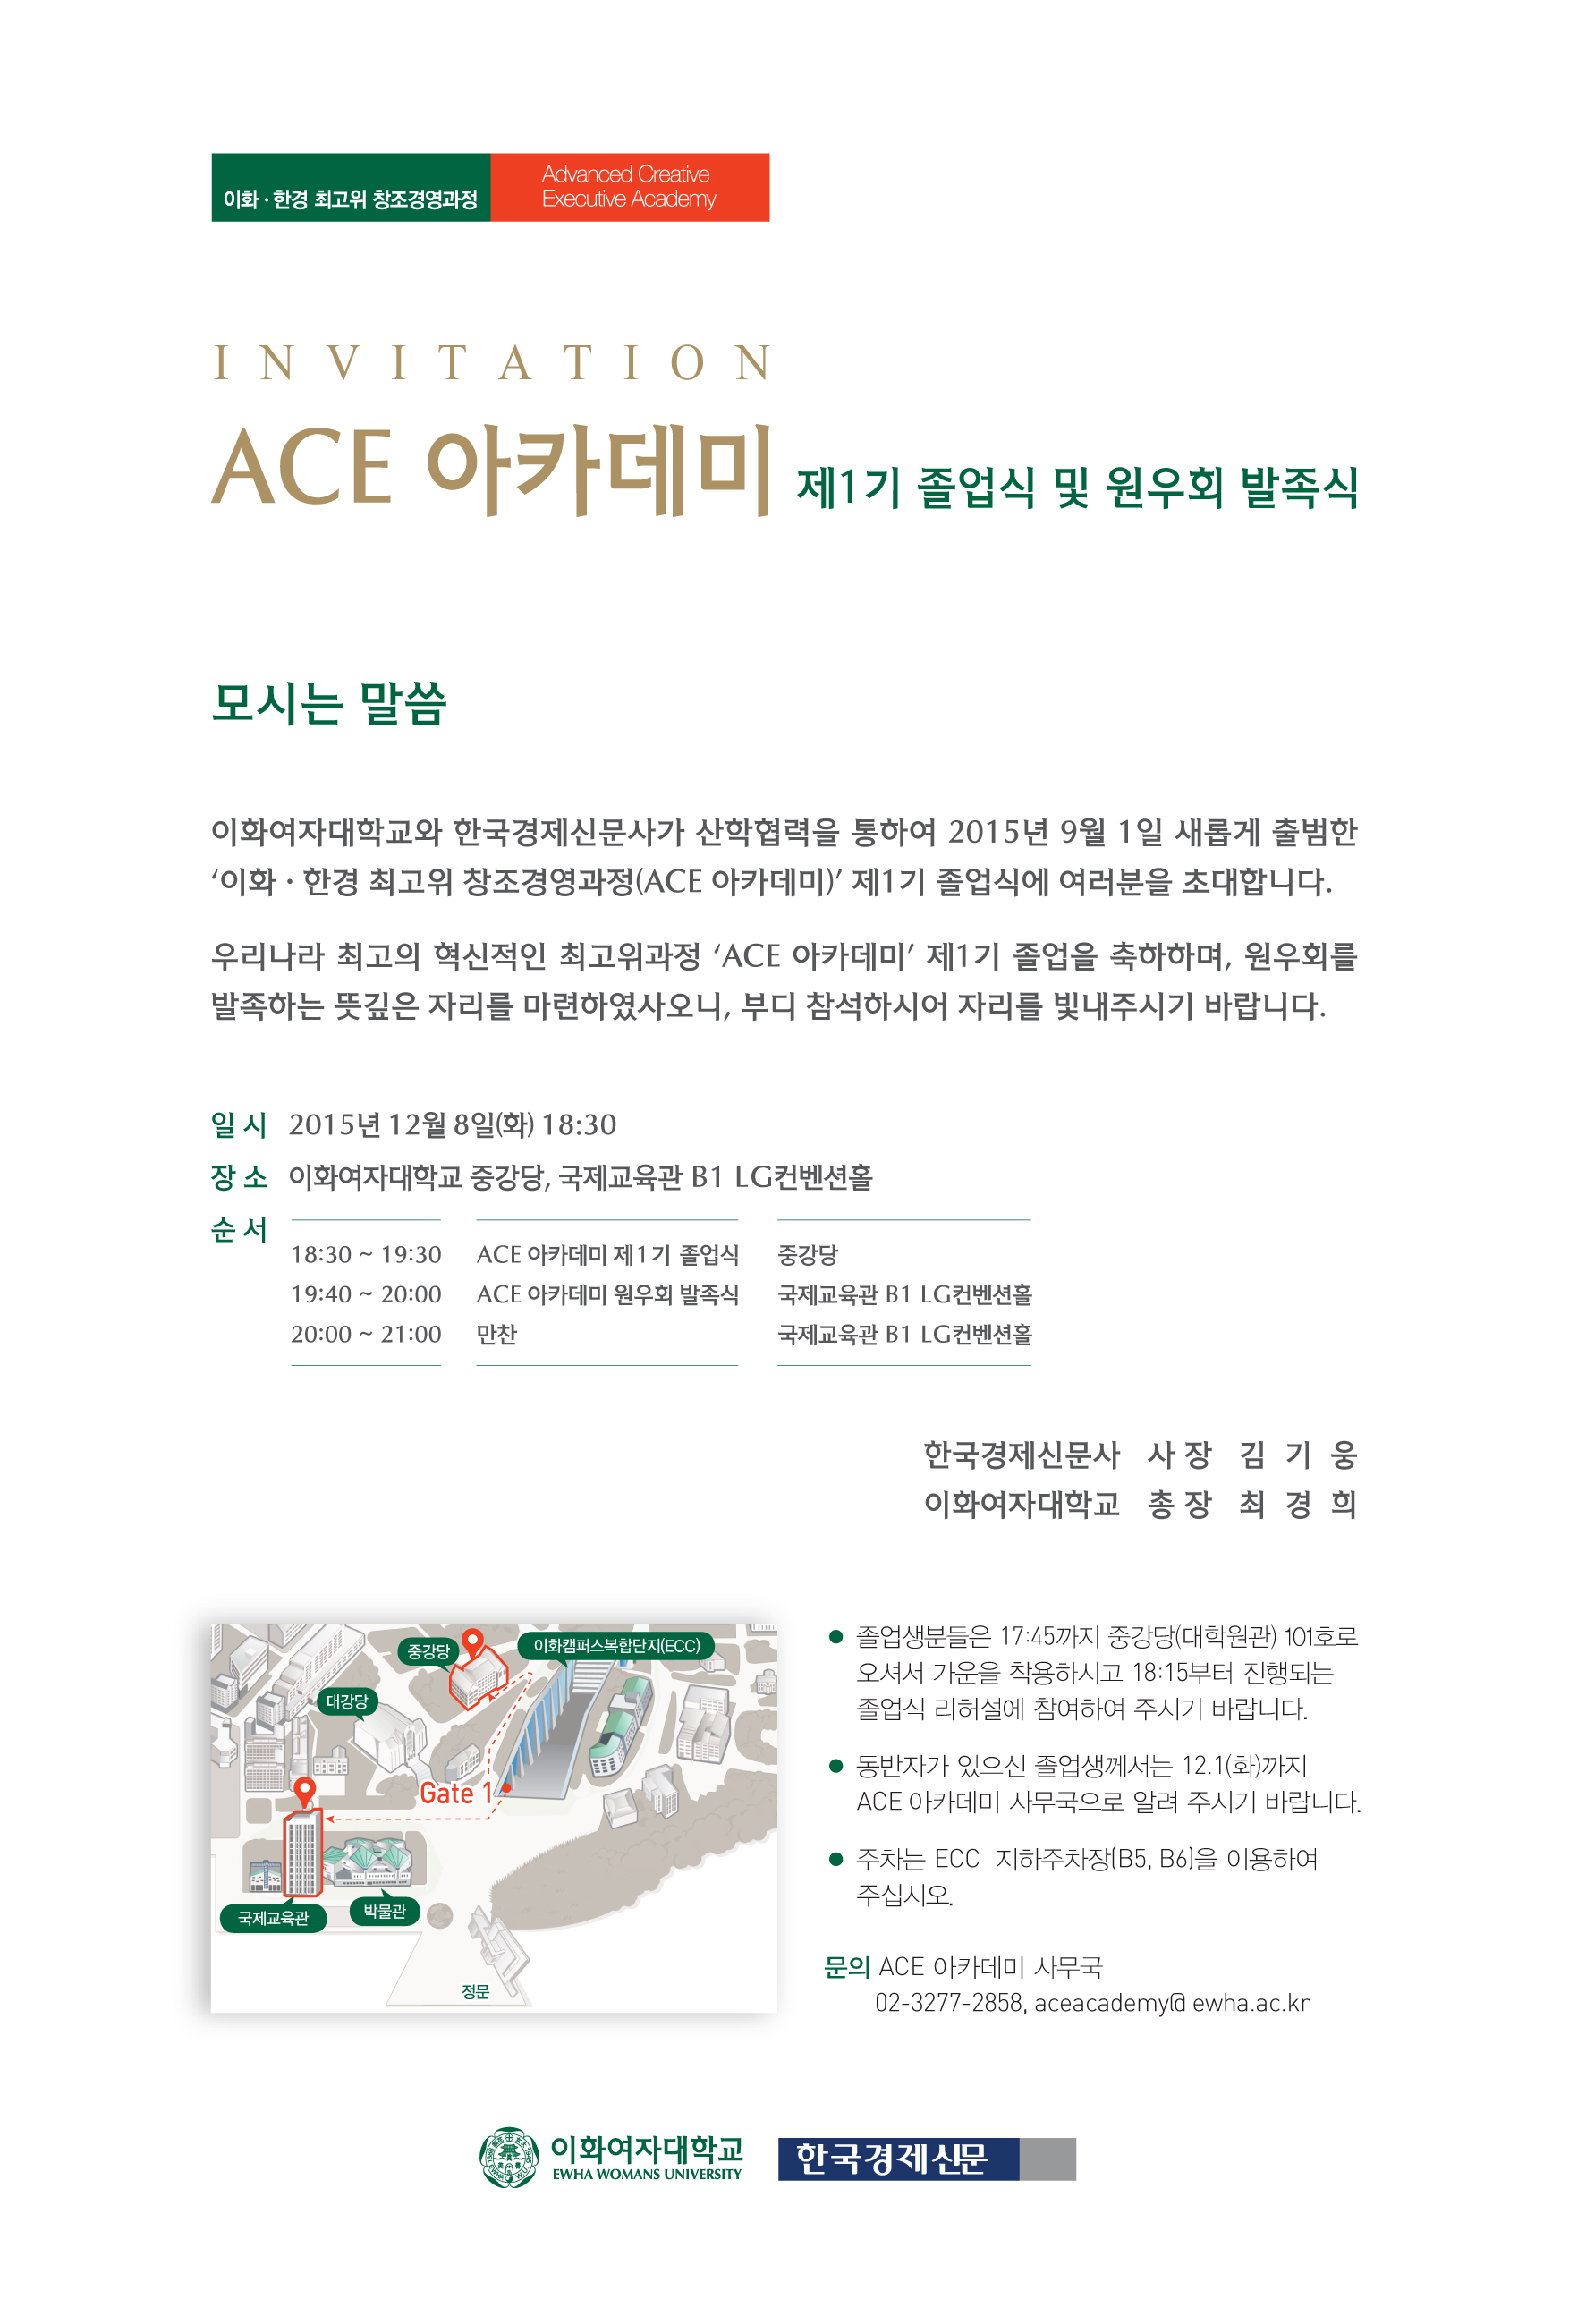 2015.12.8 ACE 아카데미 1기 졸업식 초청장